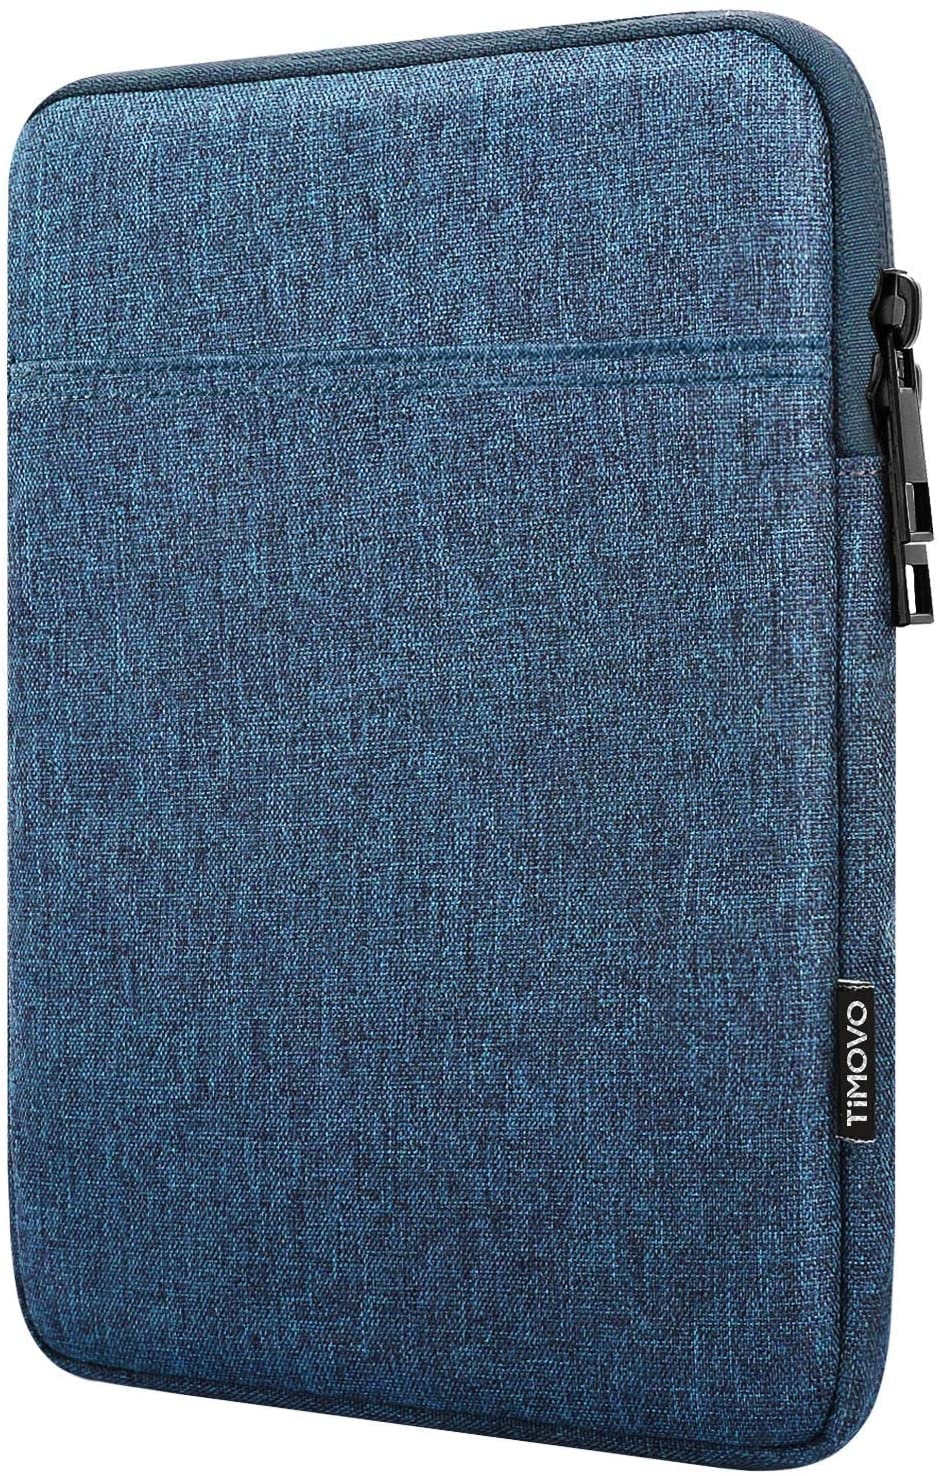 TiMOVO 8-9 Zoll Tablet Tasche Hülle Kompatibel mit iPad Mini 6, iPad Mini 5/4/3/2/1, Galaxy Tab A7 Lite 8.7/Tab A 8.0/Tab A 8.4, Fire HD 8 & 8 Plus 2020, Tablet Sleeve Schutzhülle, Blau